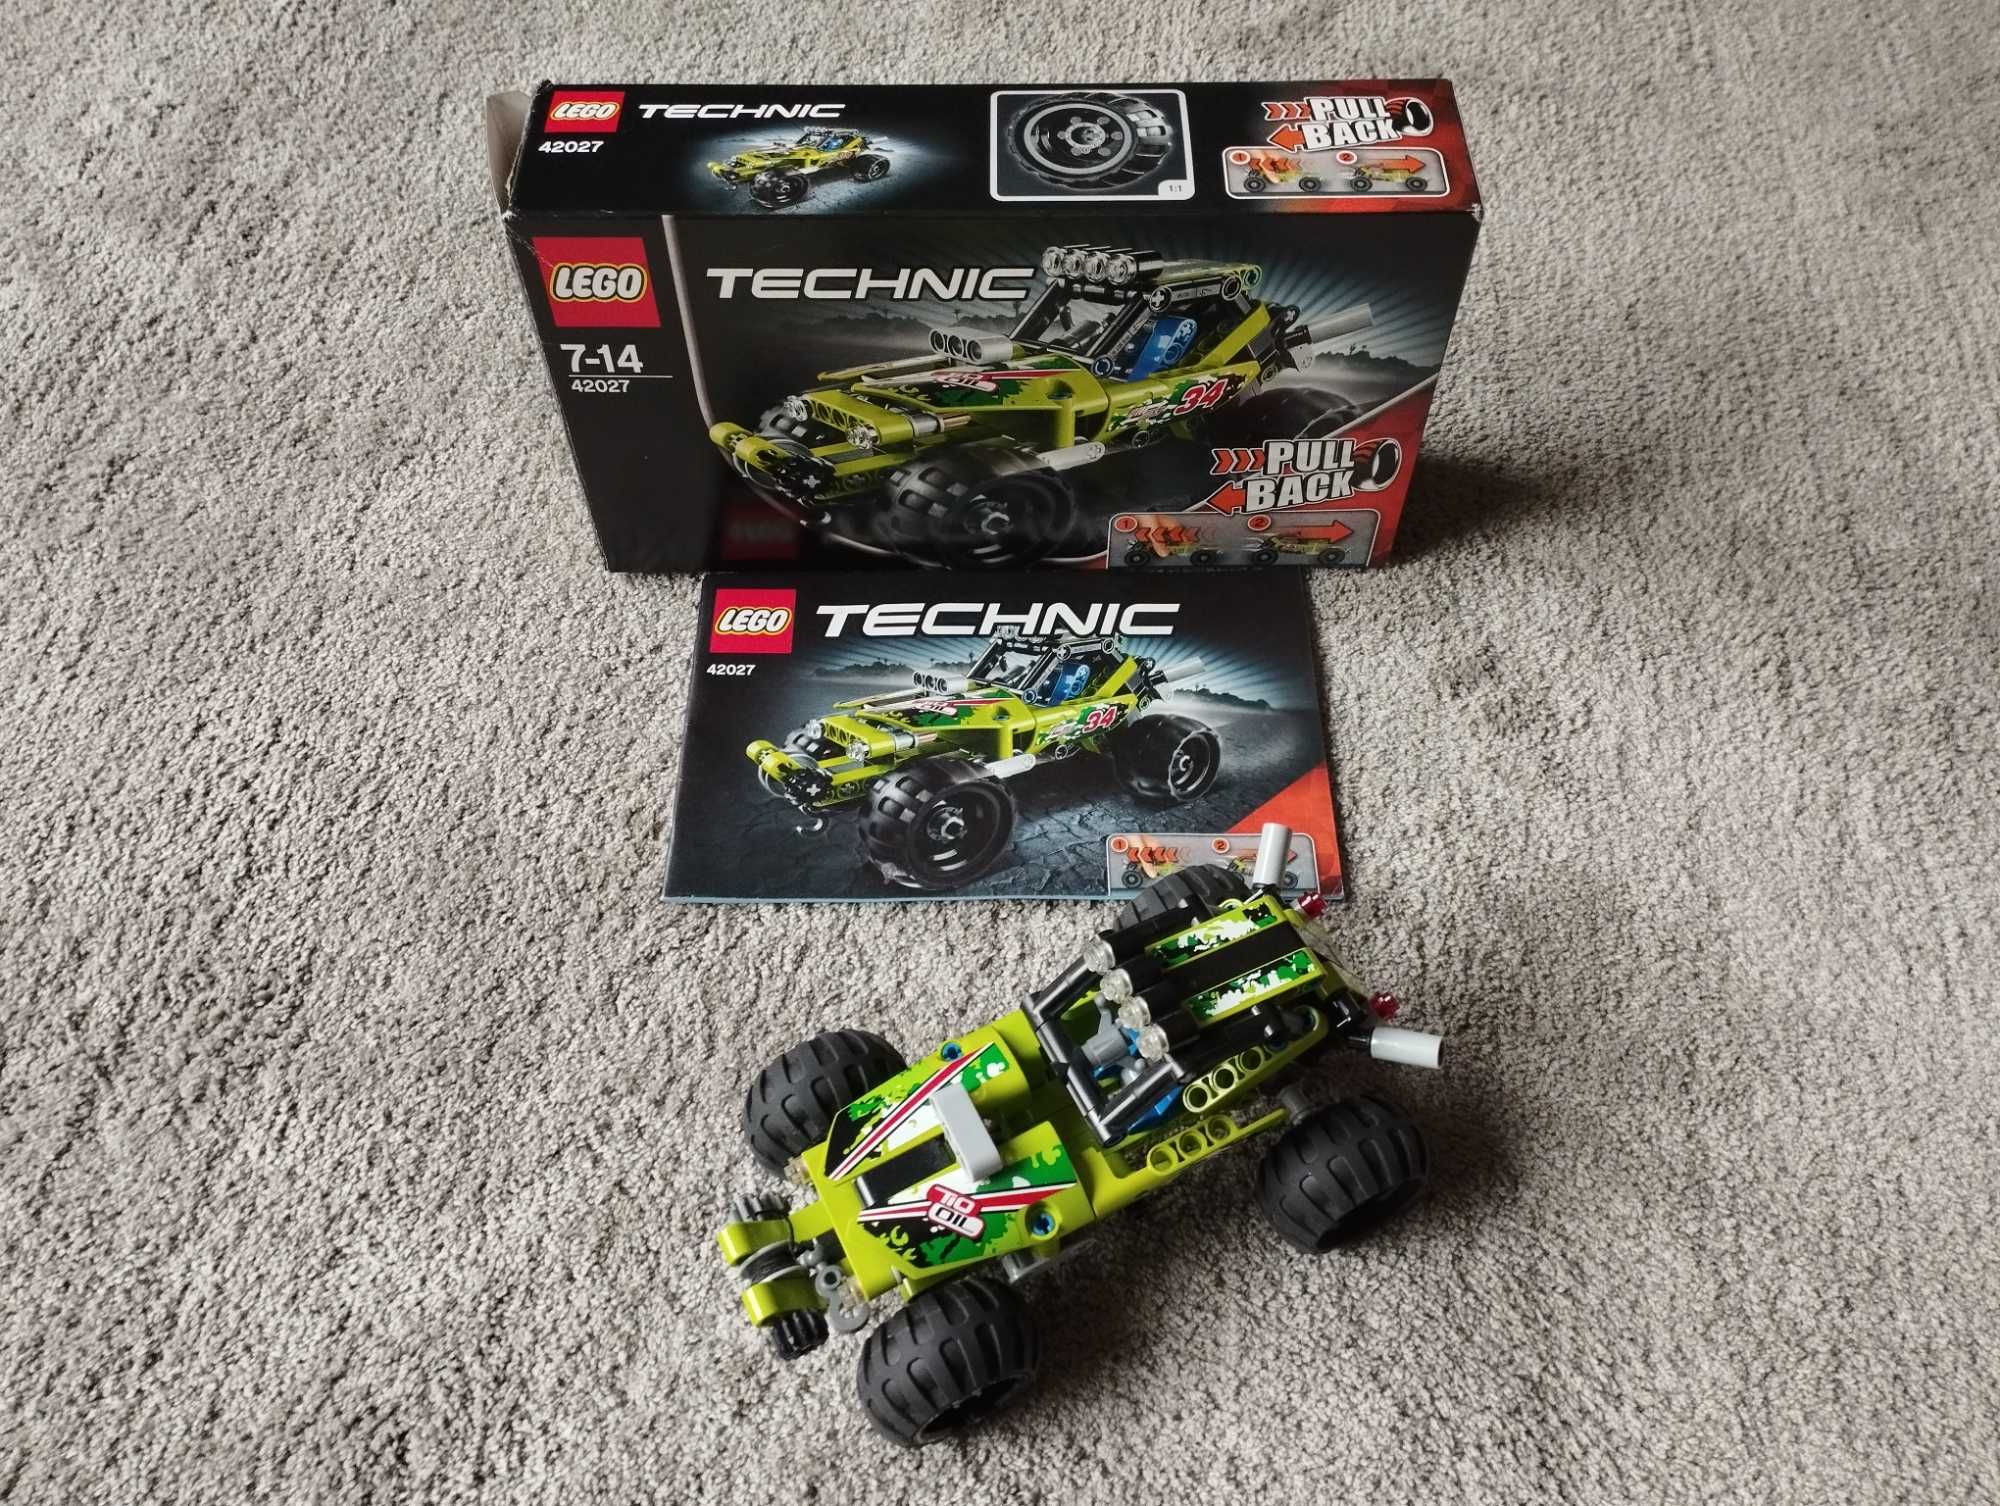 Klocki LEGO TECHNIC Pustynna wyścigówka 42027